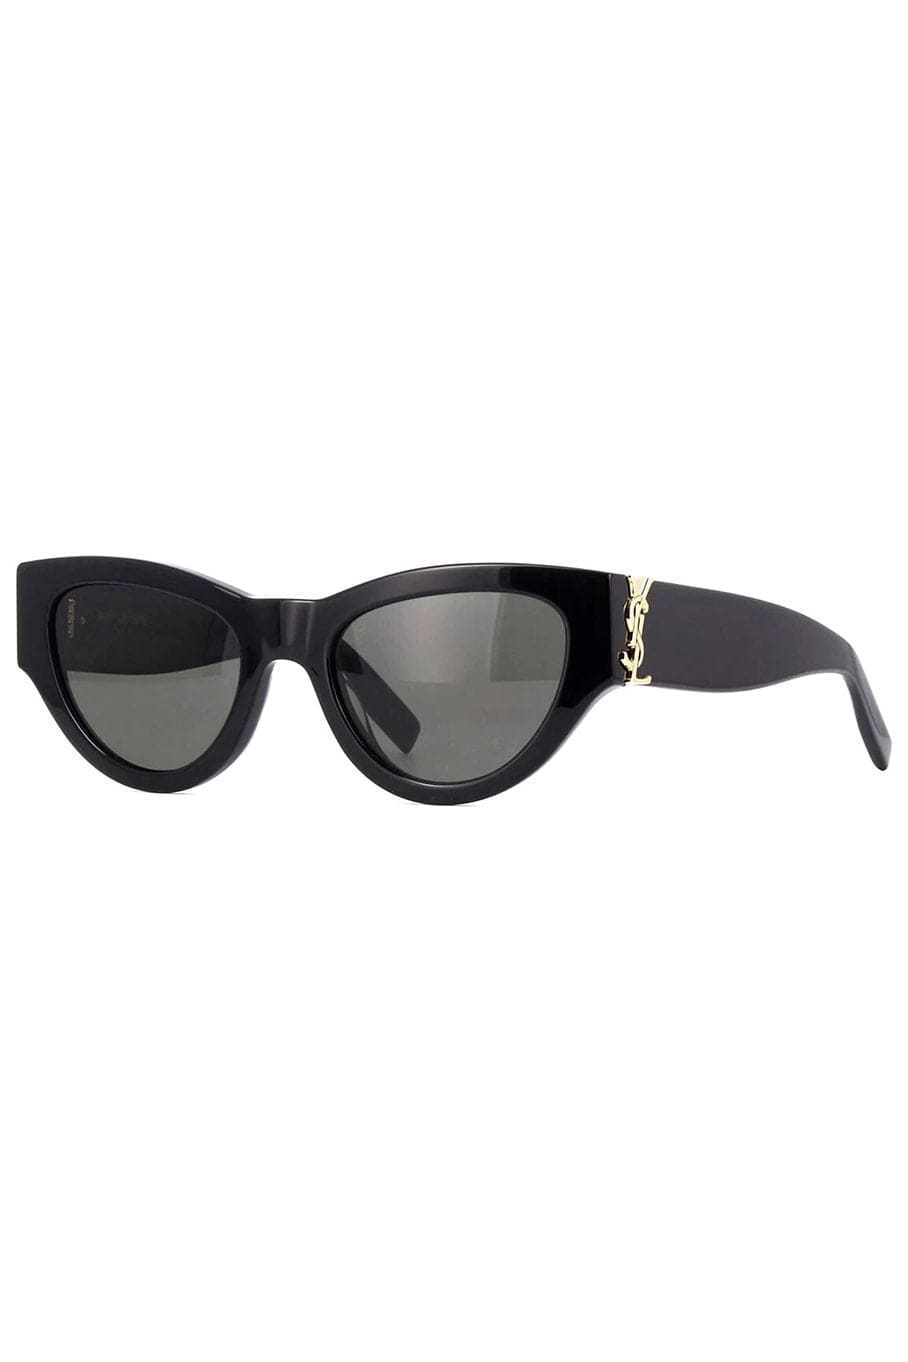 SAINT LAURENT-Butterfly Sunglasses-BLACK/GREY